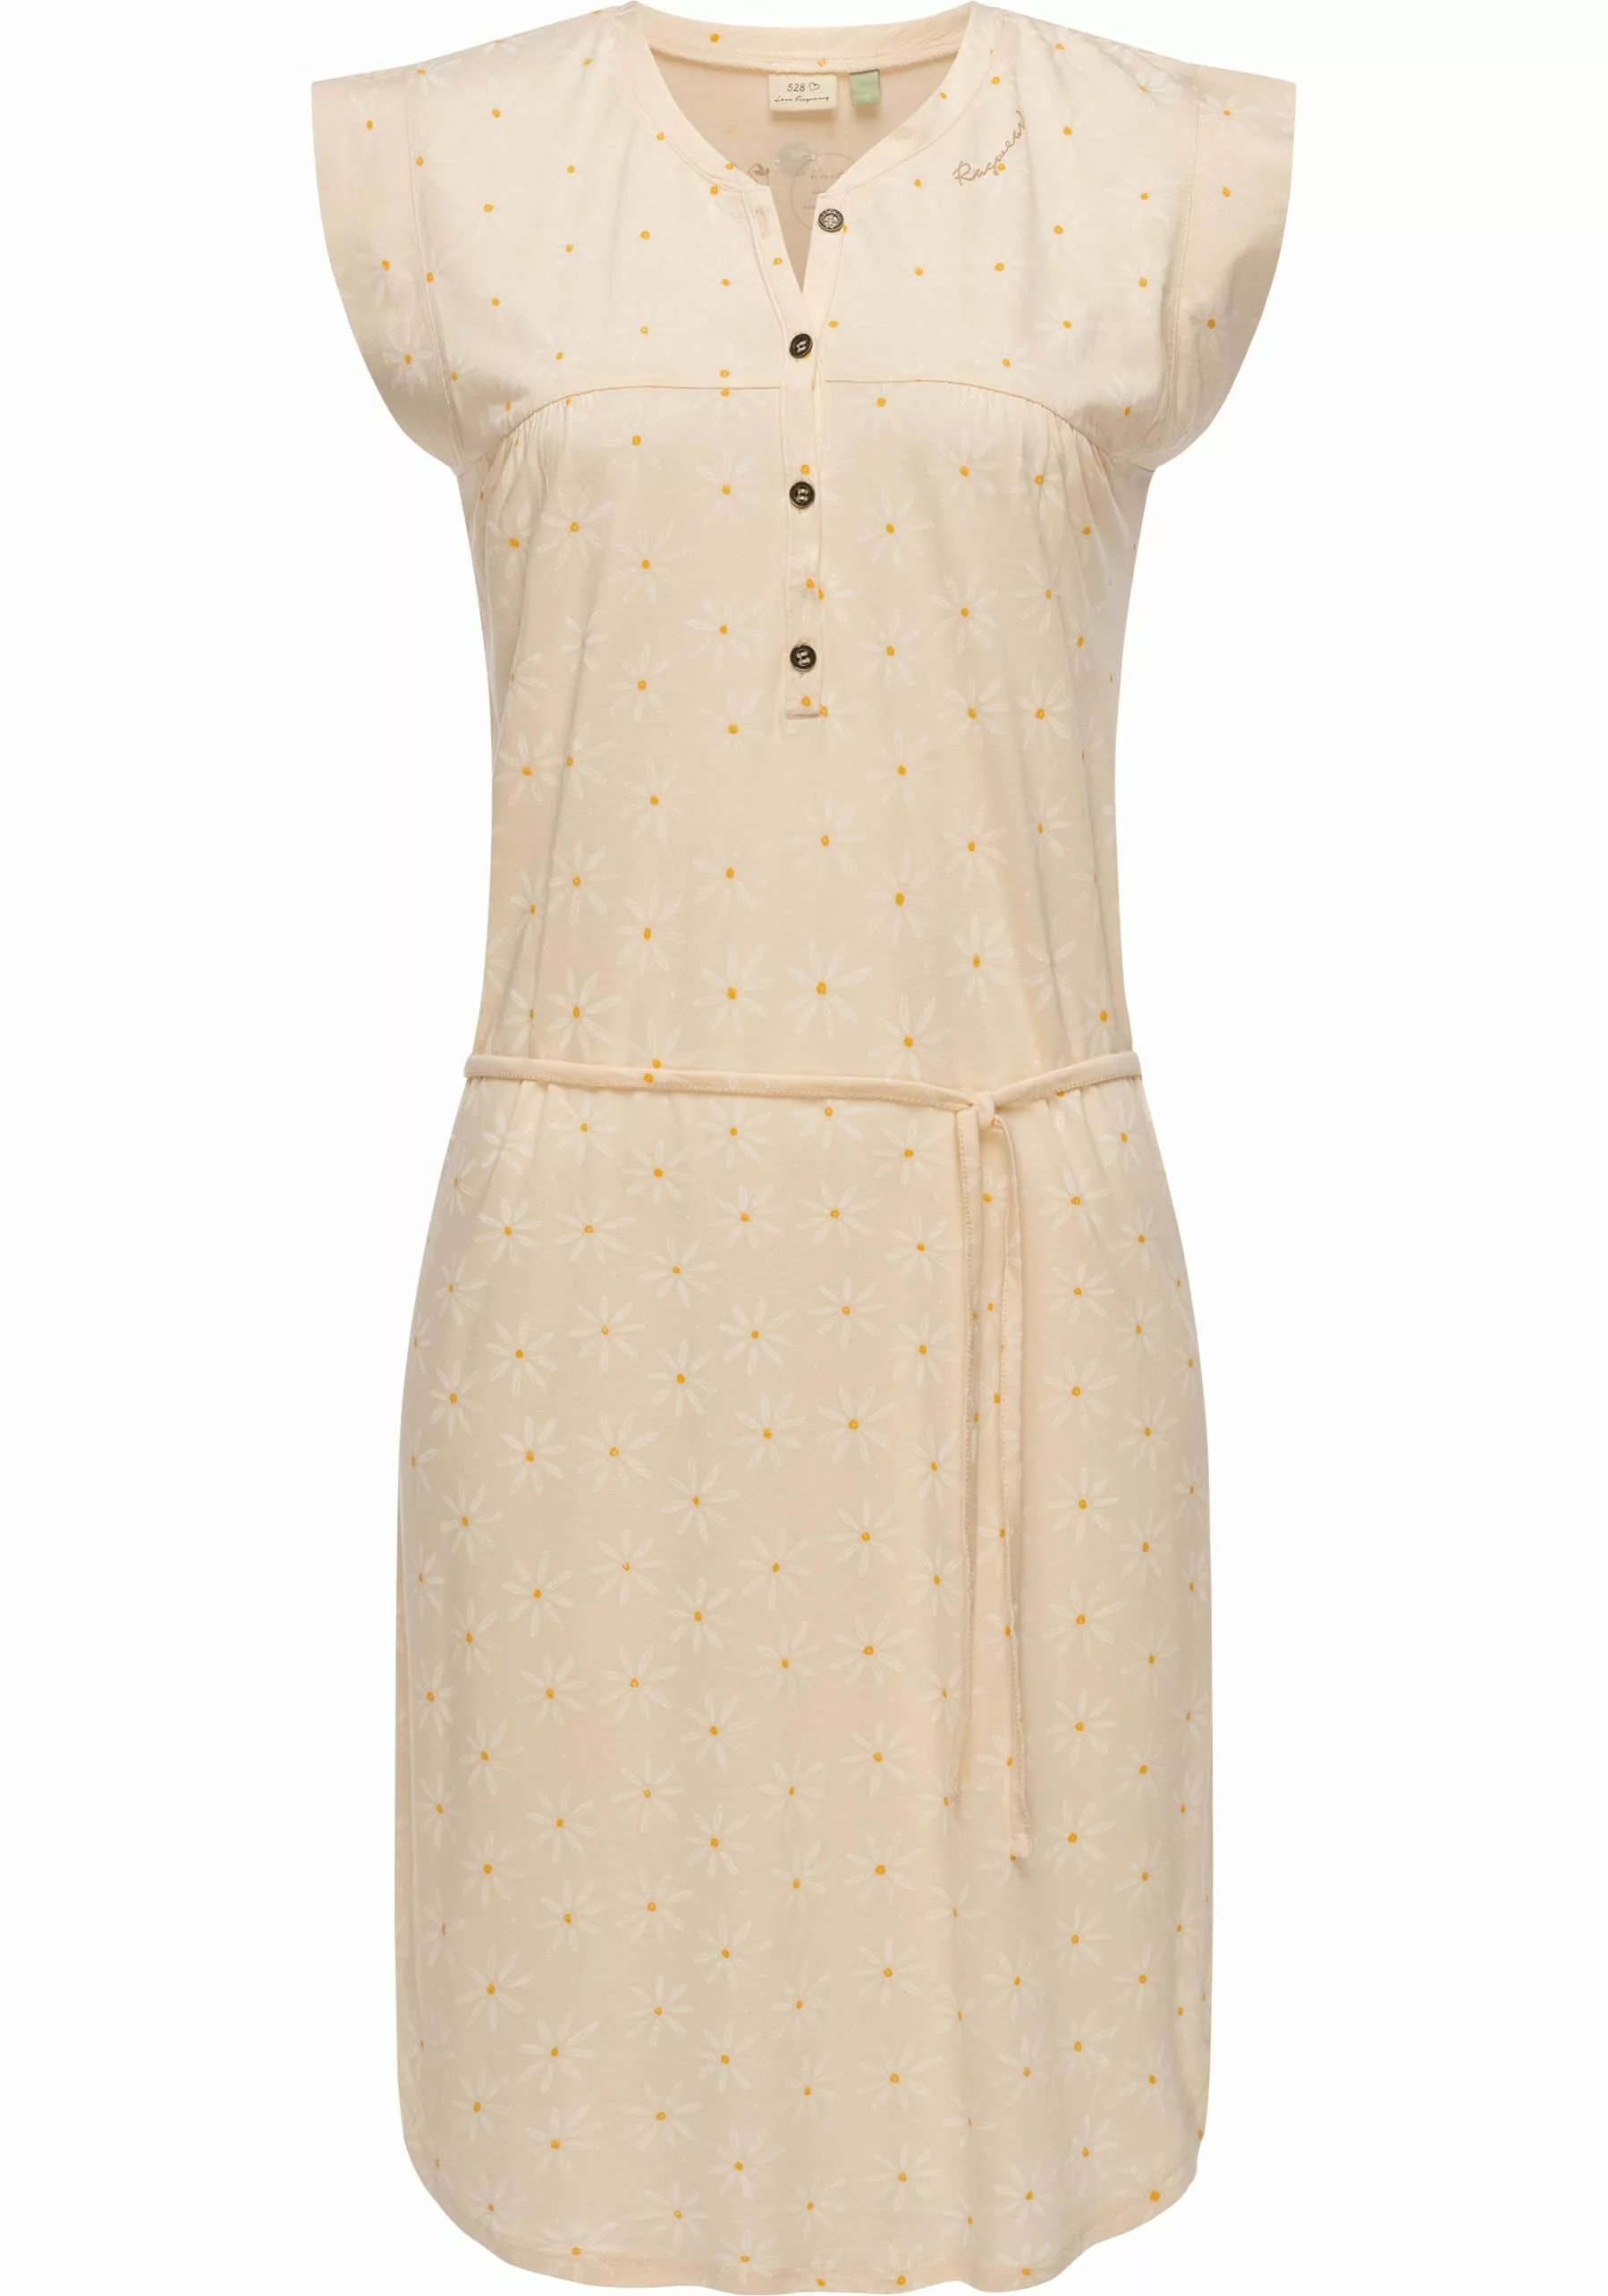 Ragwear Sommerkleid "Zofka", leichtes Jersey Kleid mit sommerlichem Print günstig online kaufen